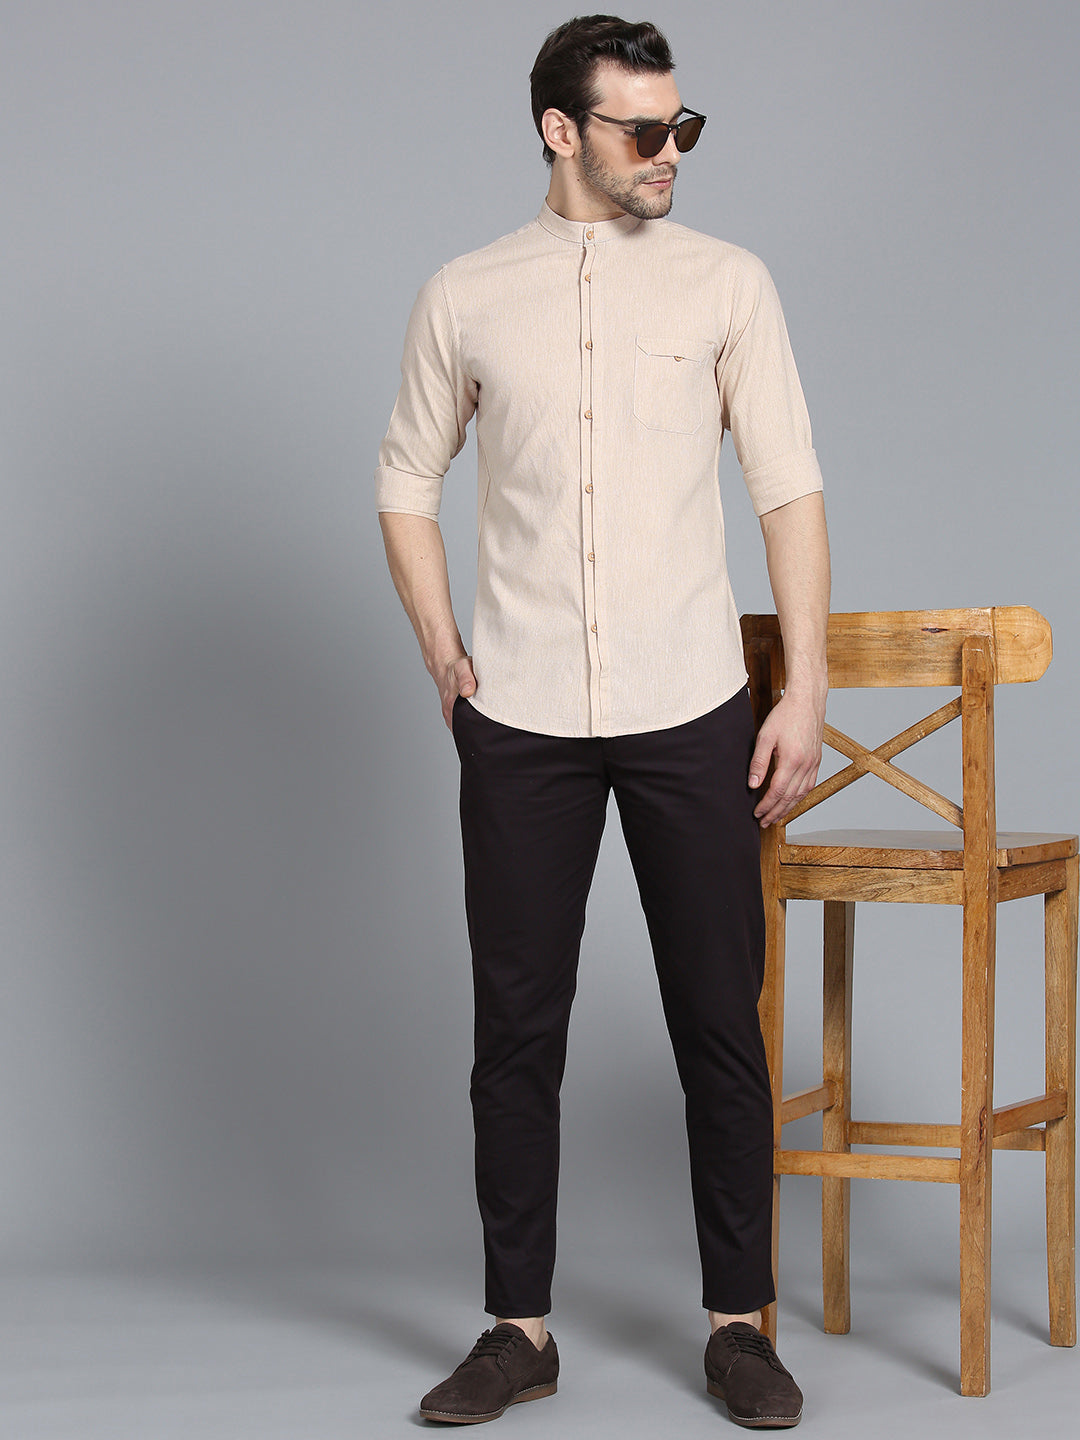 Light Beige Linen Shirt With Placket Details Shirt